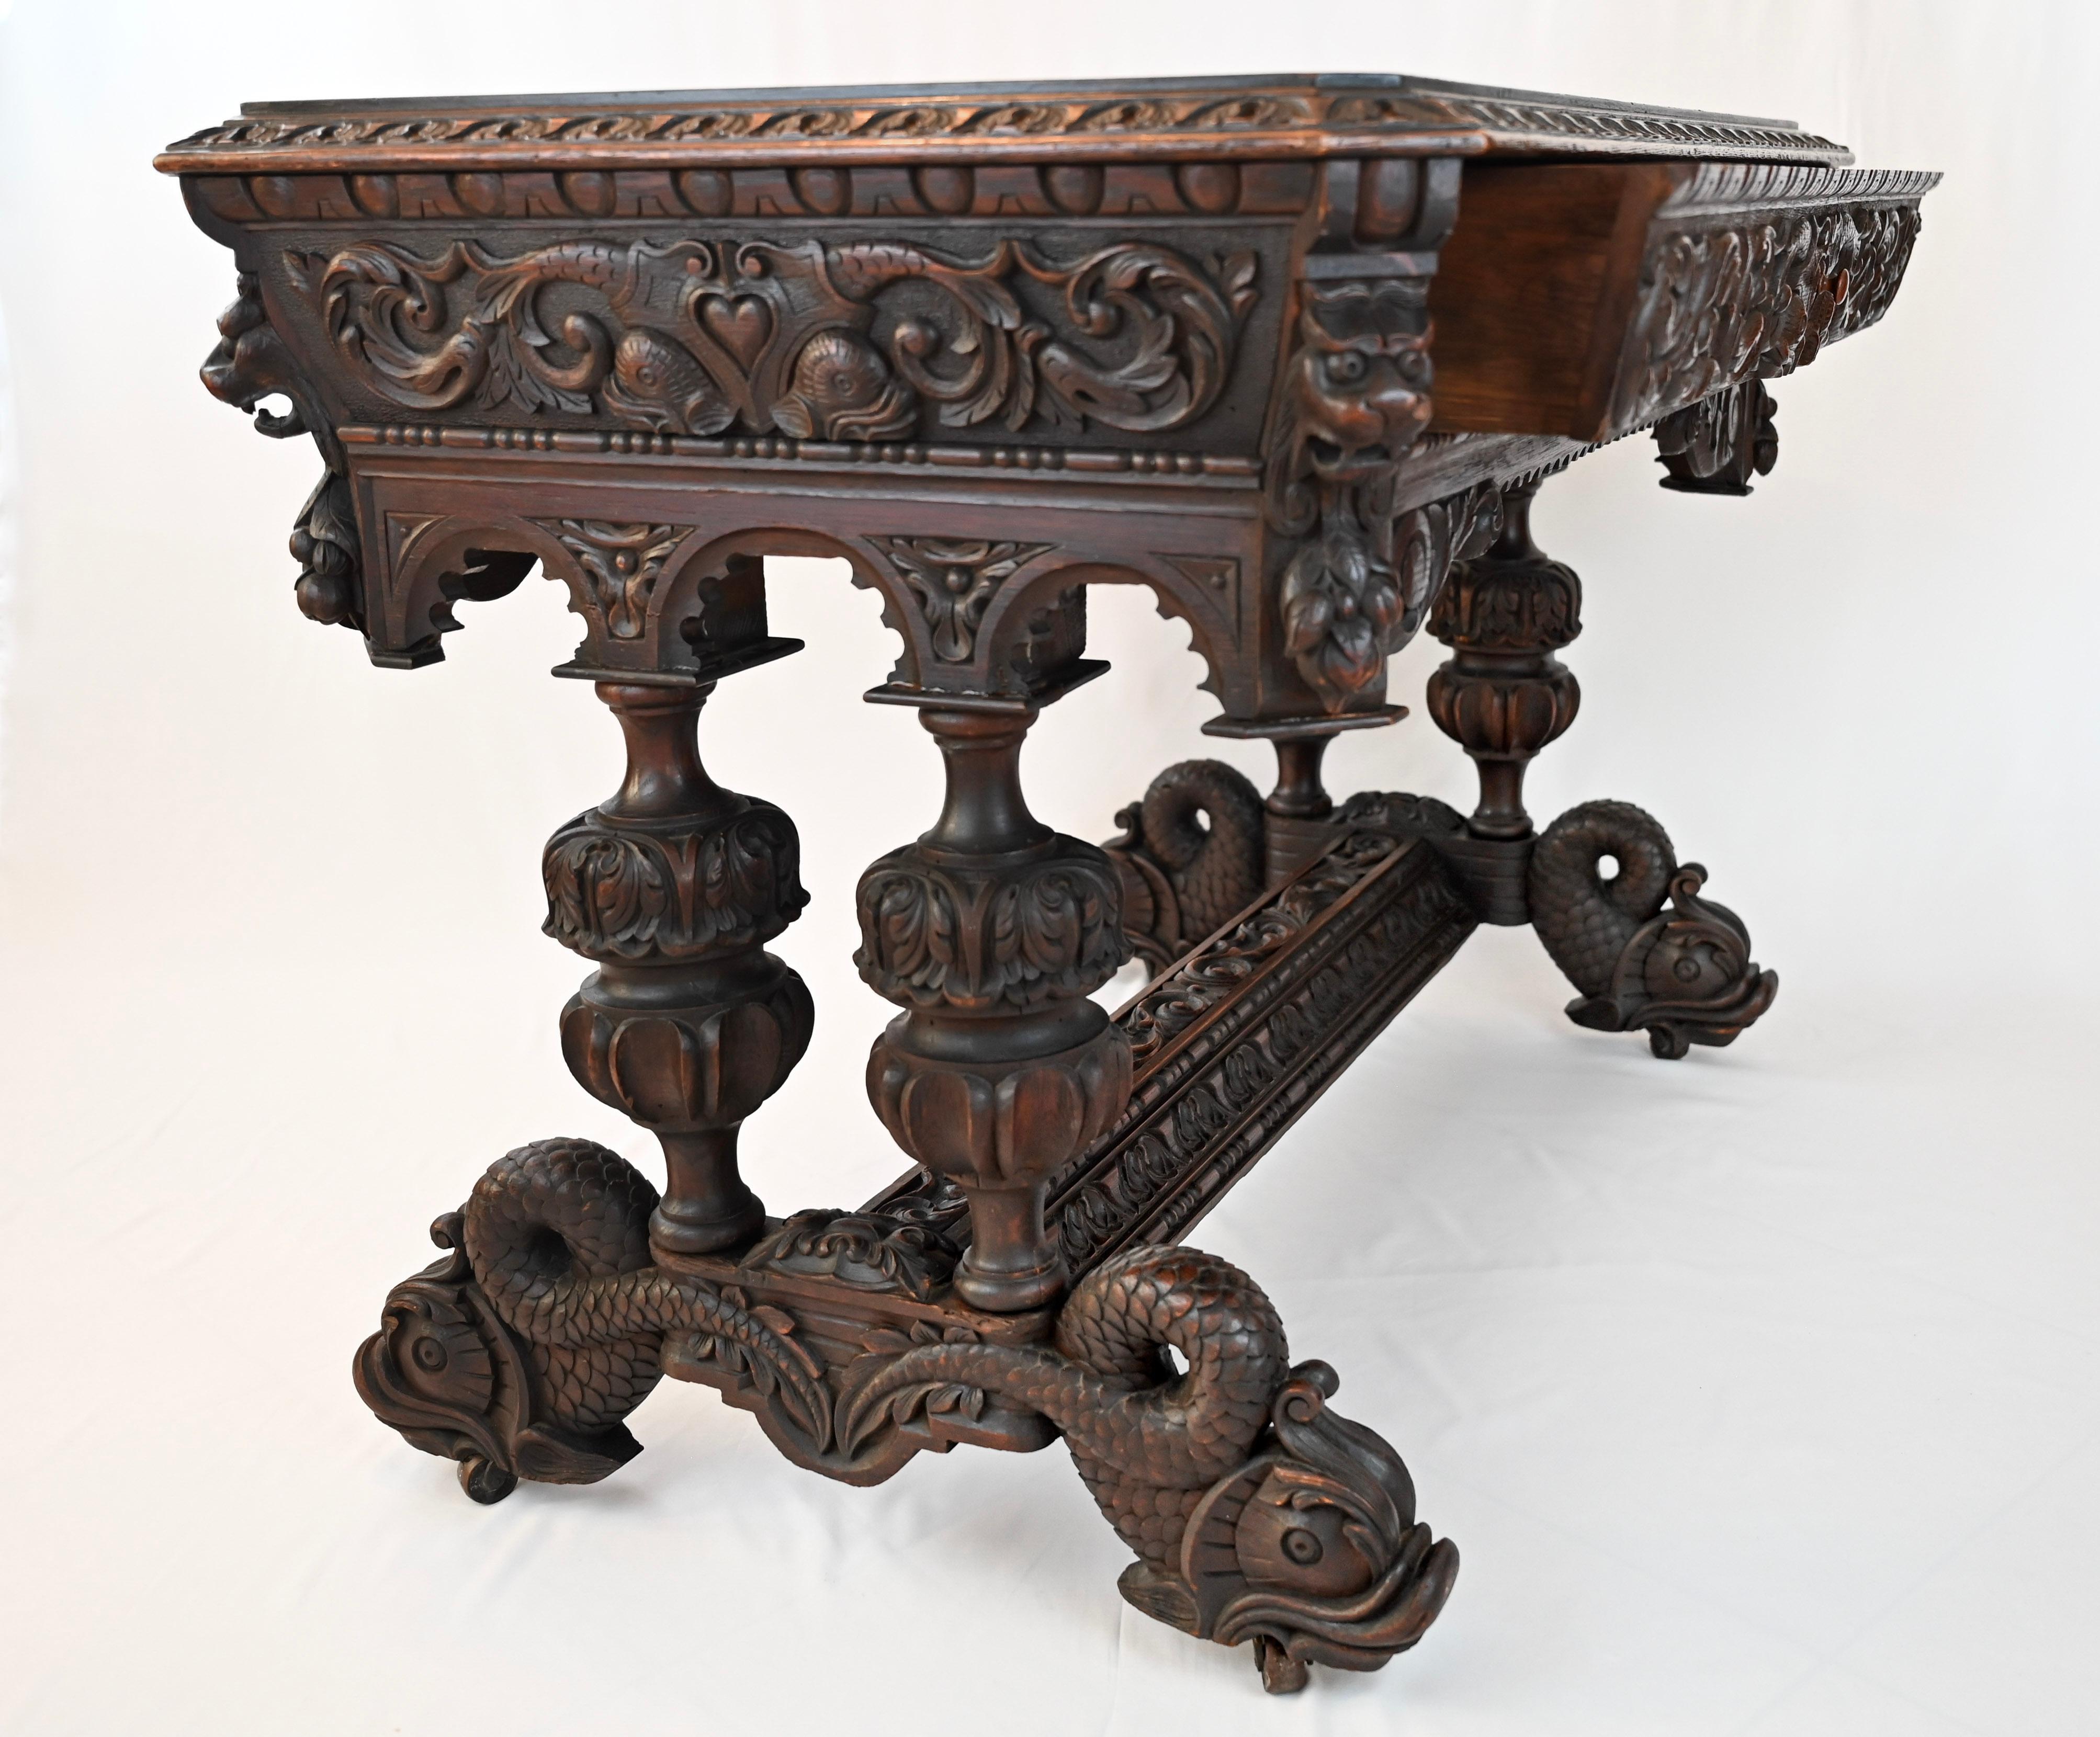 Une étonnante table de bibliothèque en chêne sculpté français du 19ème siècle, style Renaissance Gothique. 

En provenance directe de France, une élégante table de bibliothèque ou d'écriture sculptée, communément appelée table 